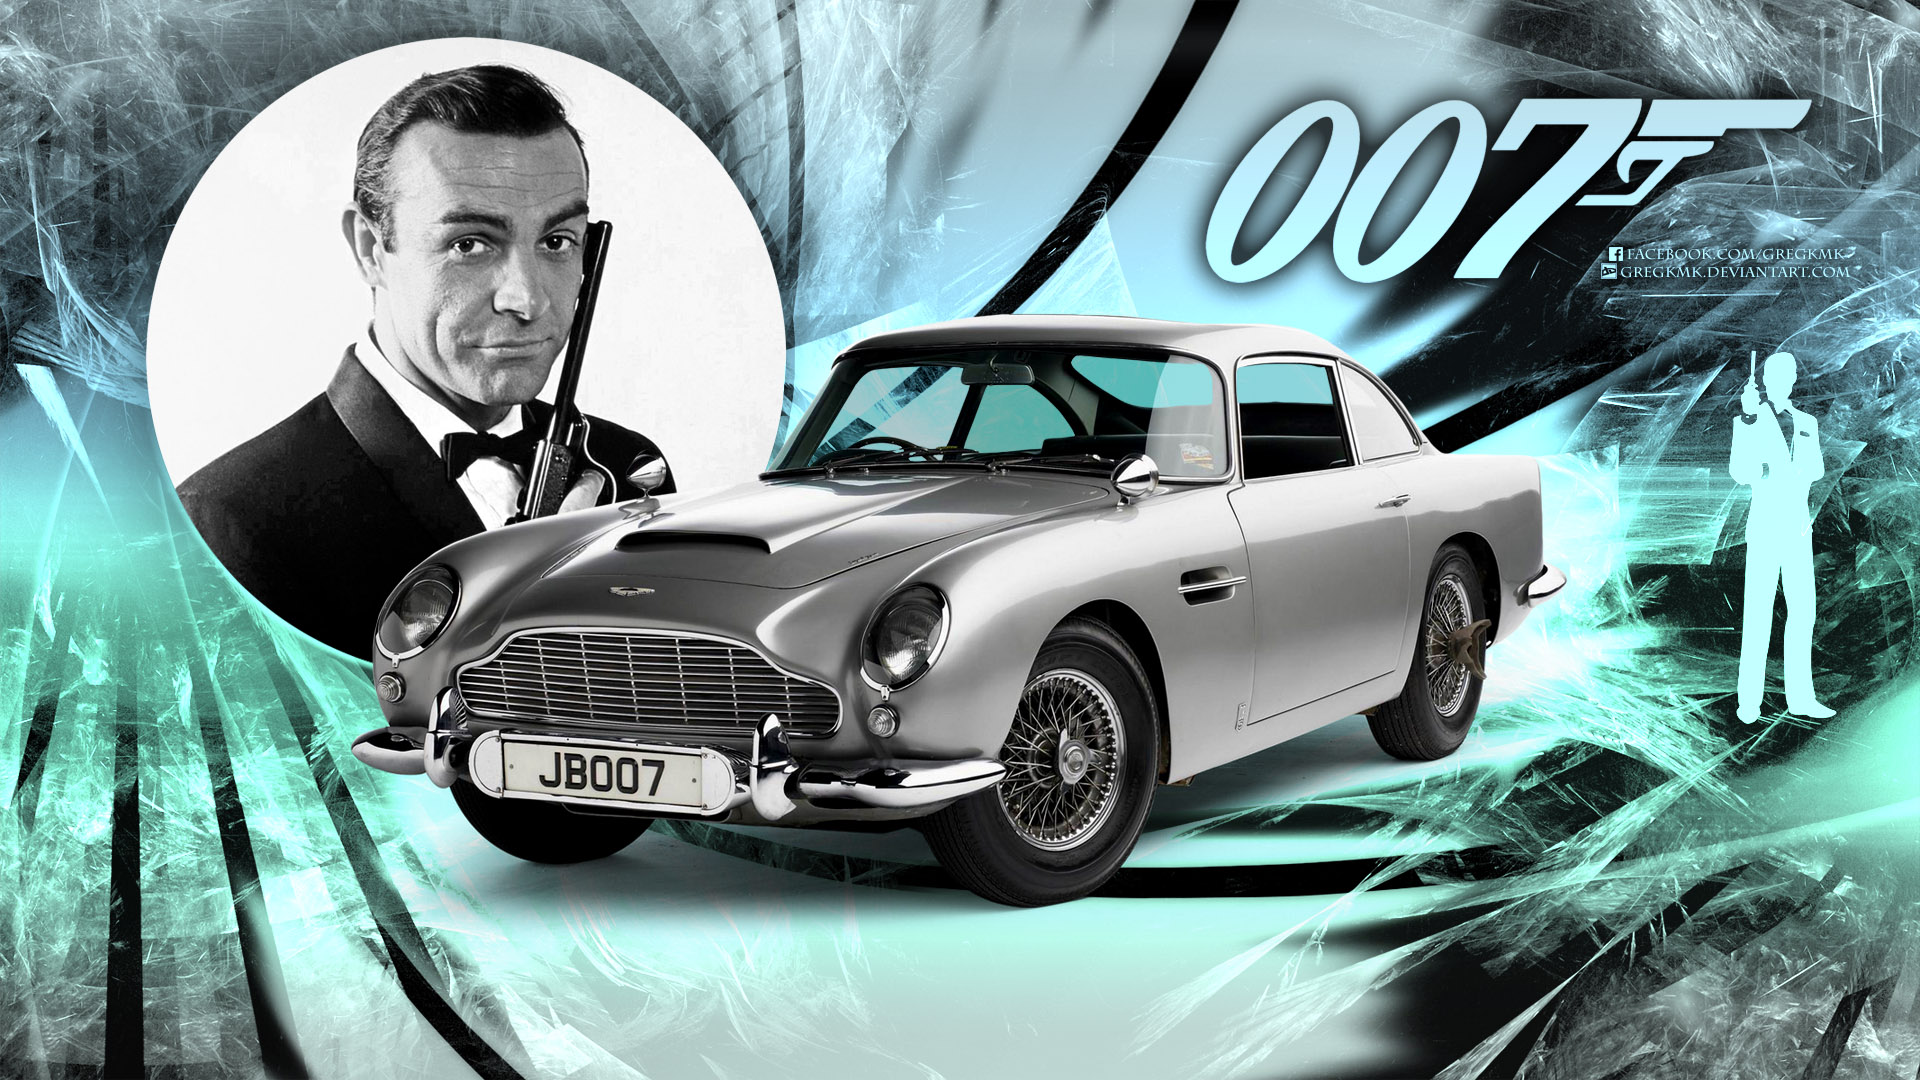 James Bond Wallpaper By Gregkmk